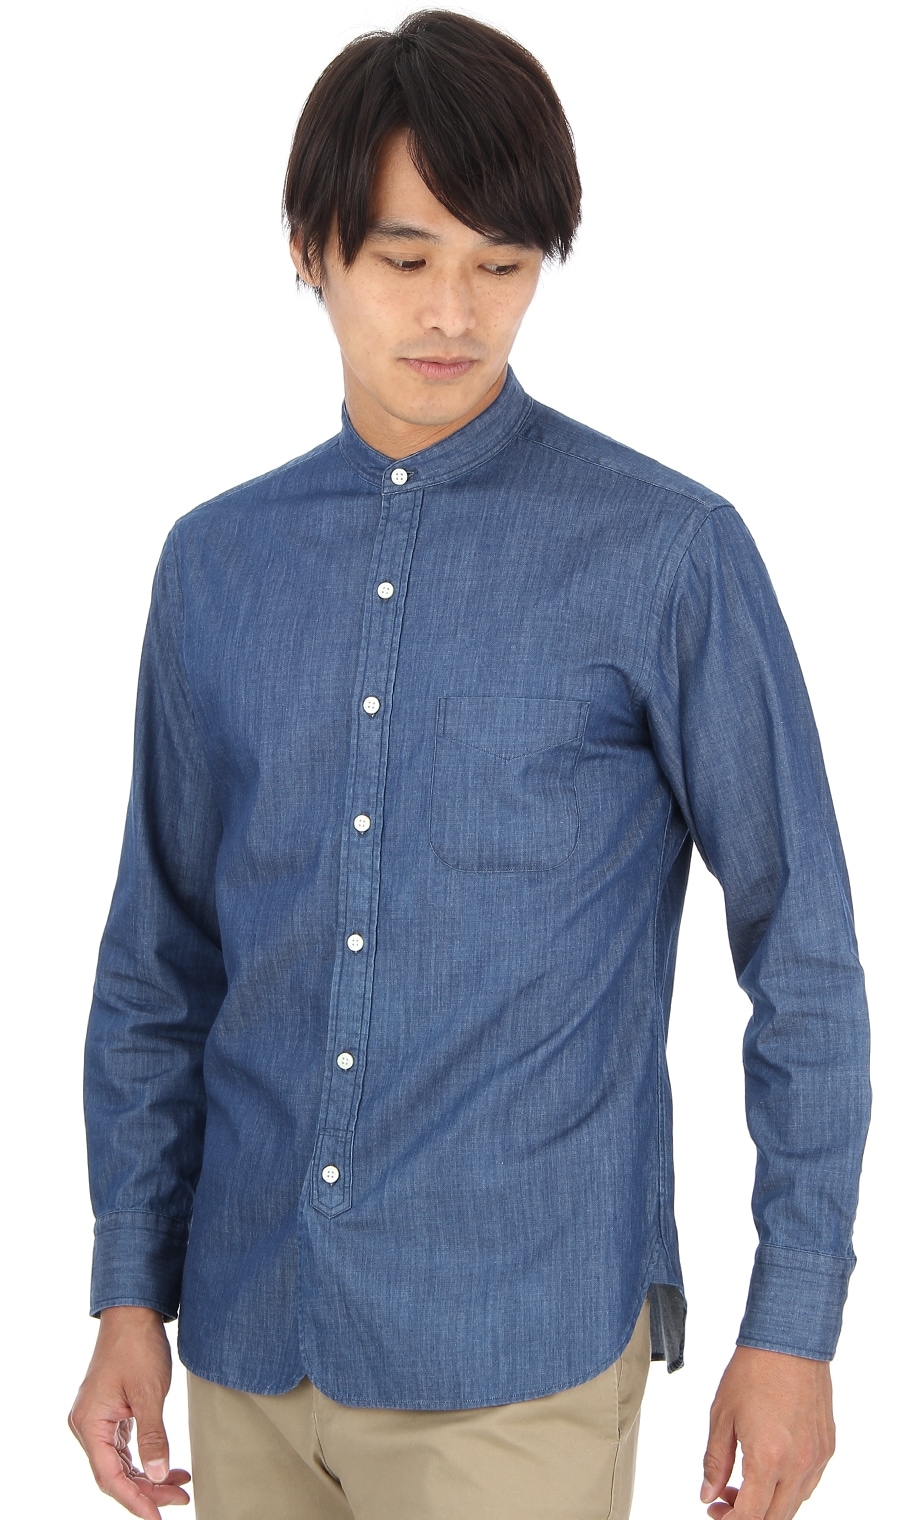 スタンドカラーシャツ Mosh6103 91 Morles 紳士服 スーツ販売数世界no 1 洋服の青山 公式通販